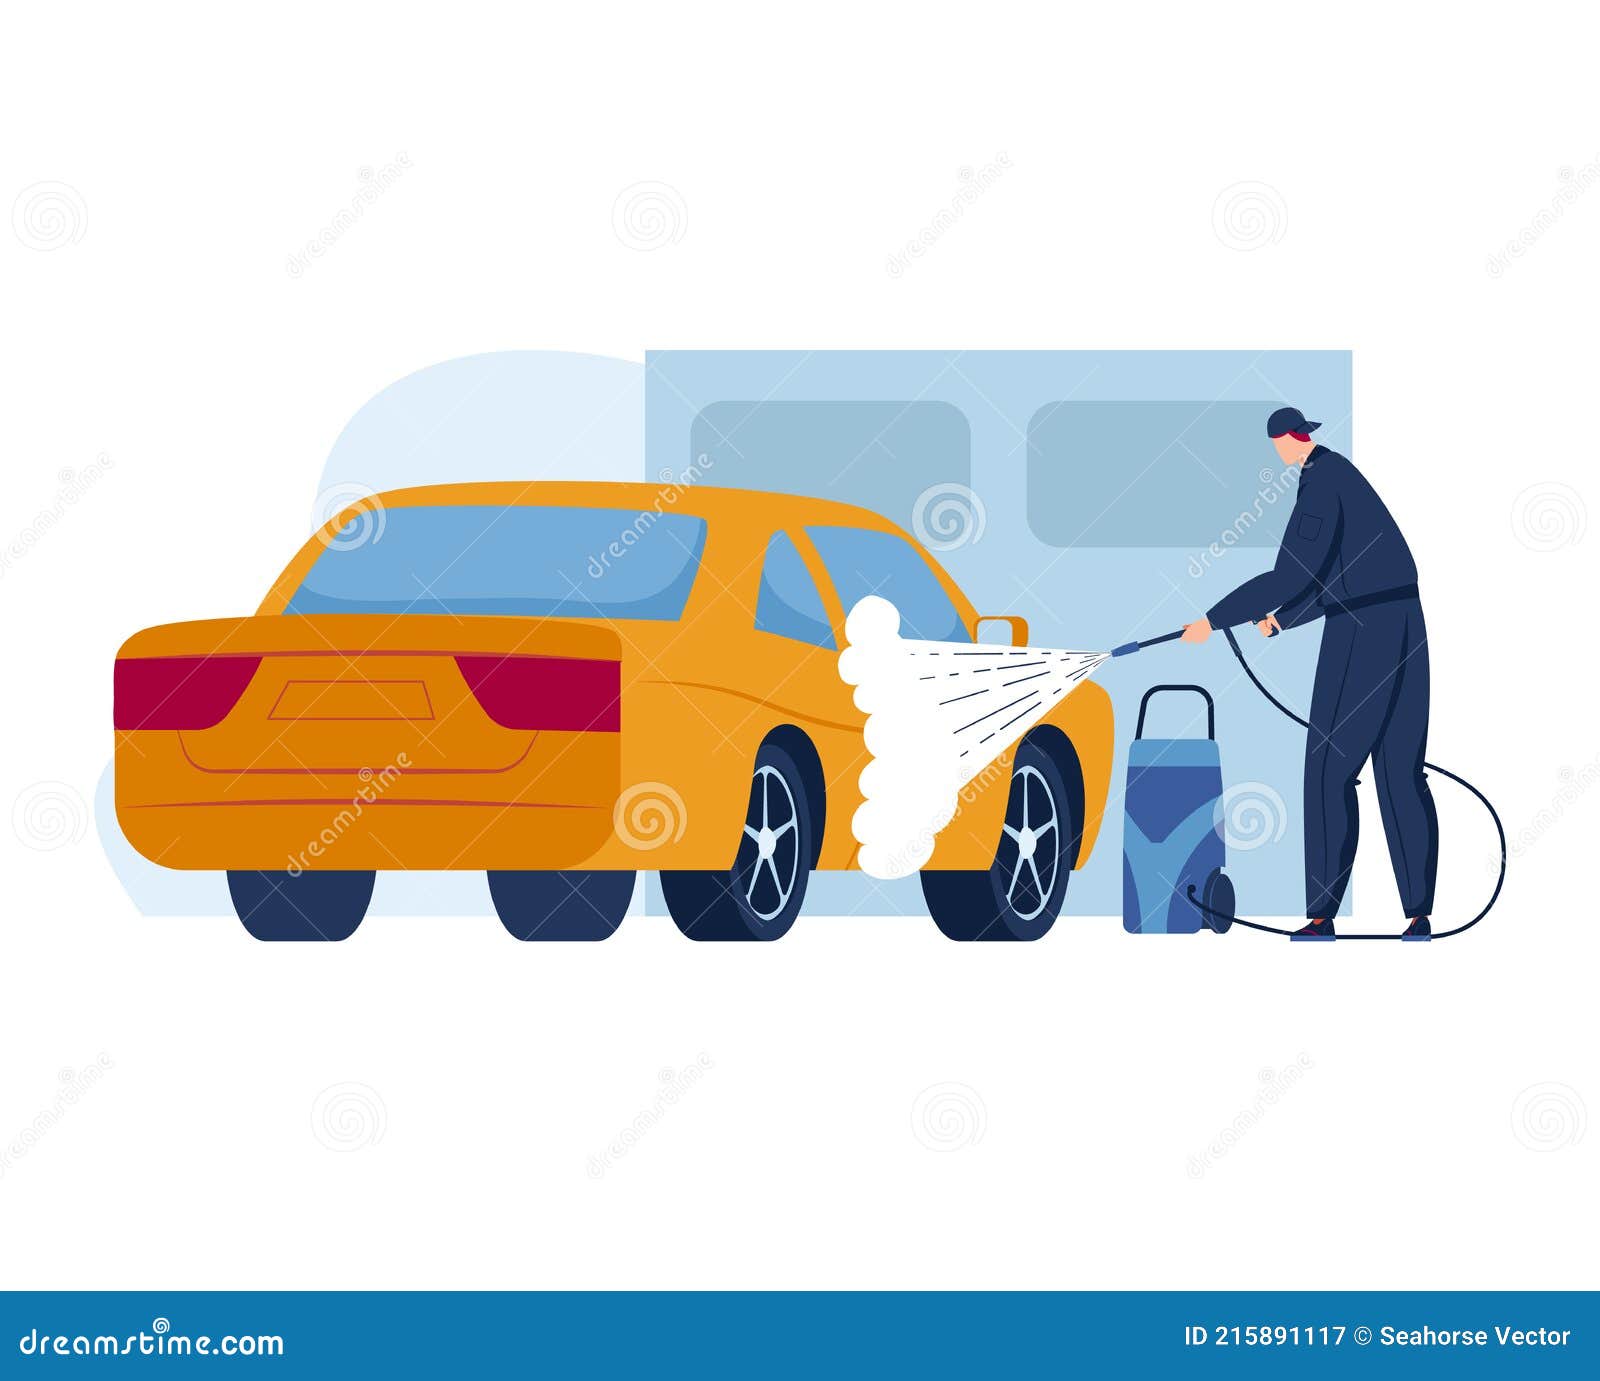 Ilustración de lavado de autos. el coche está en espuma de jabón.